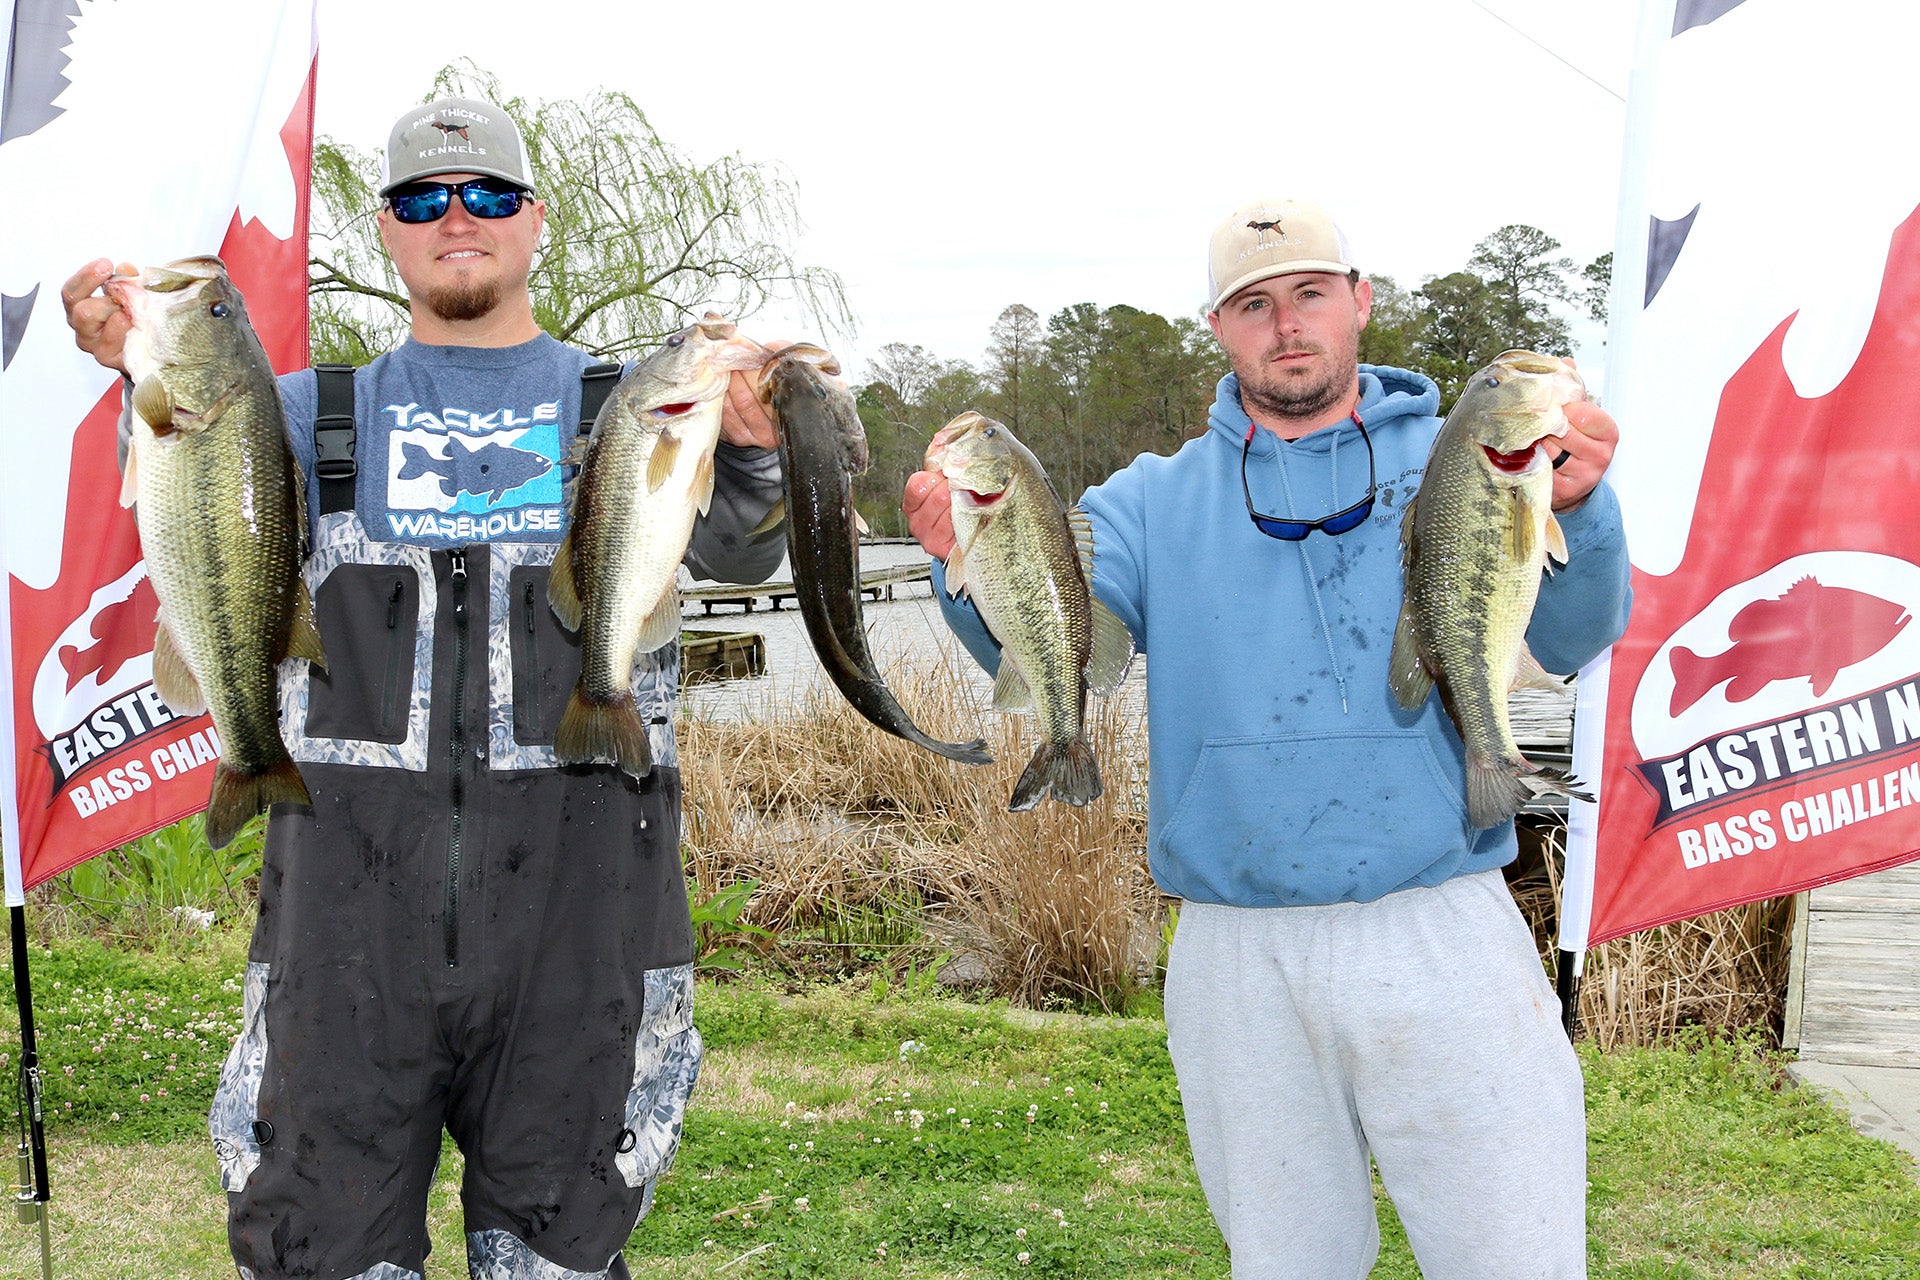 Anglers return to Washington for fishing tournament - Washington Daily News